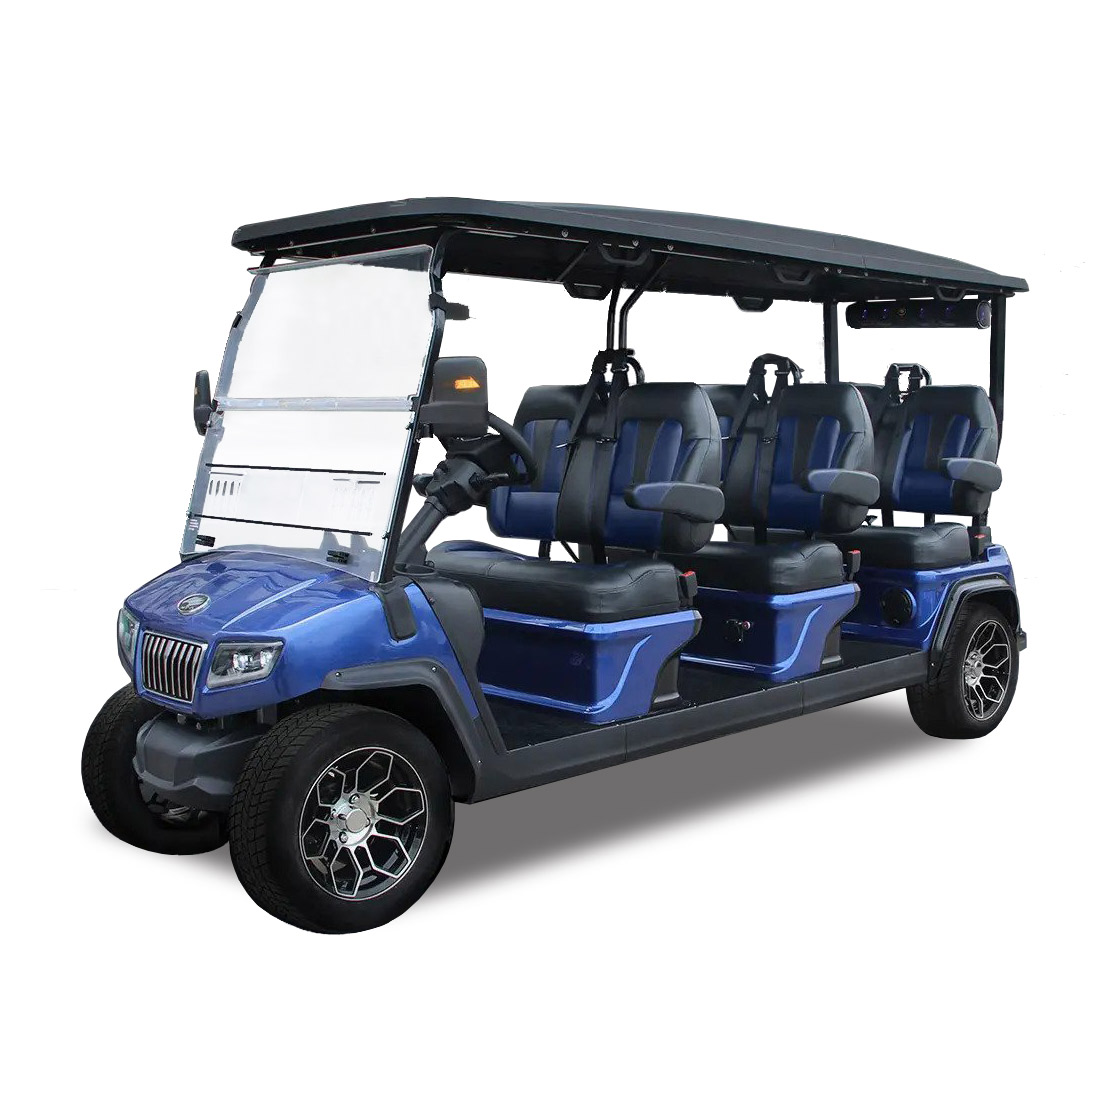 Street-Legal Golf Cart Review: Evolution D5 Ranger-6 Golf Cart